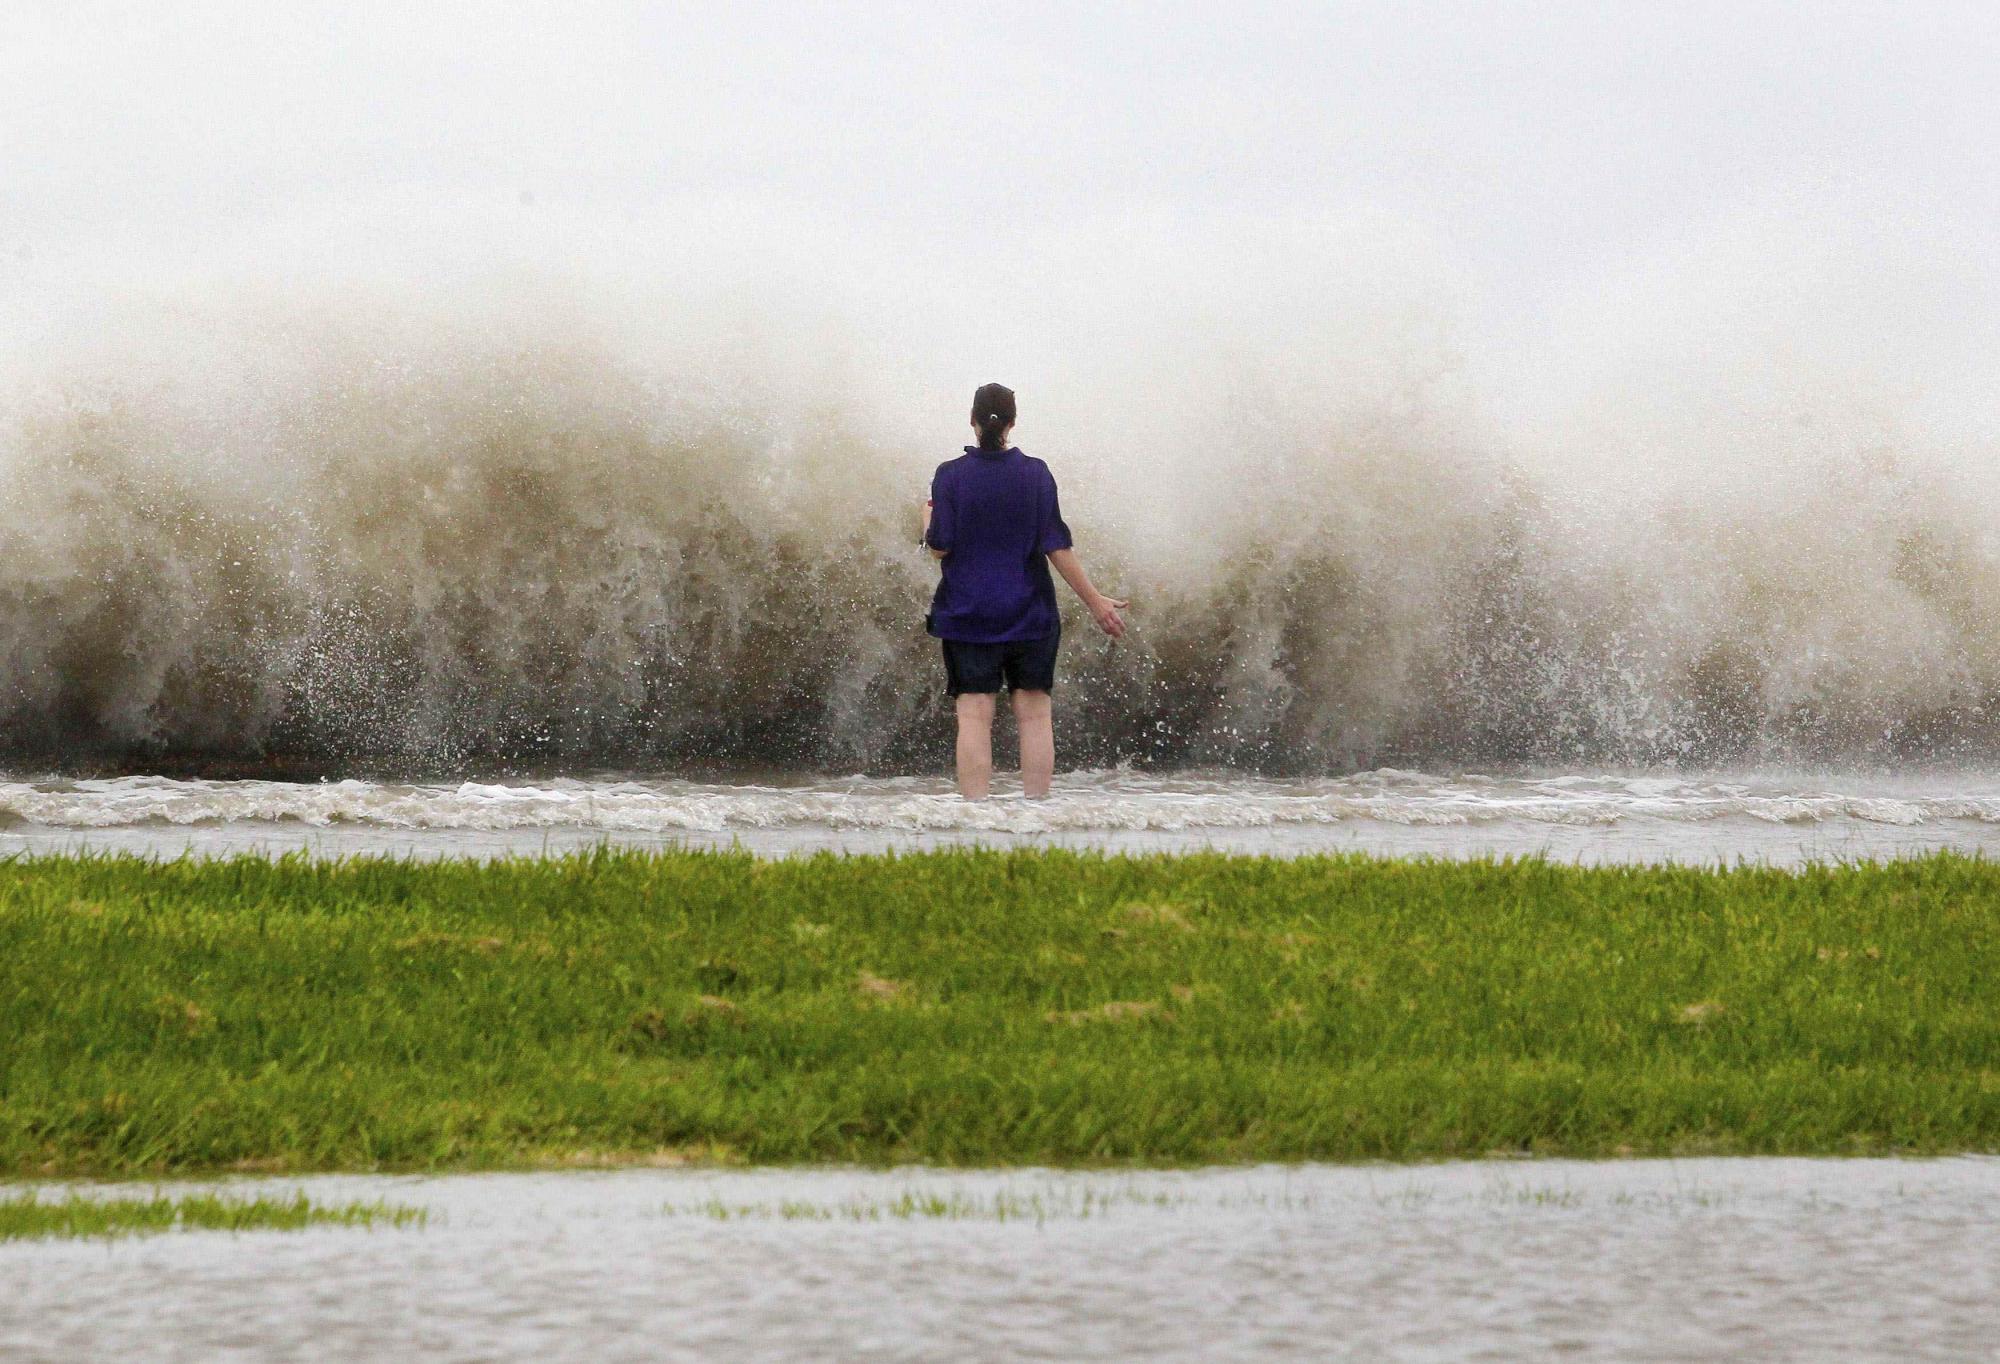 艾萨克增强为一级飓风登美 全球最大防洪系统